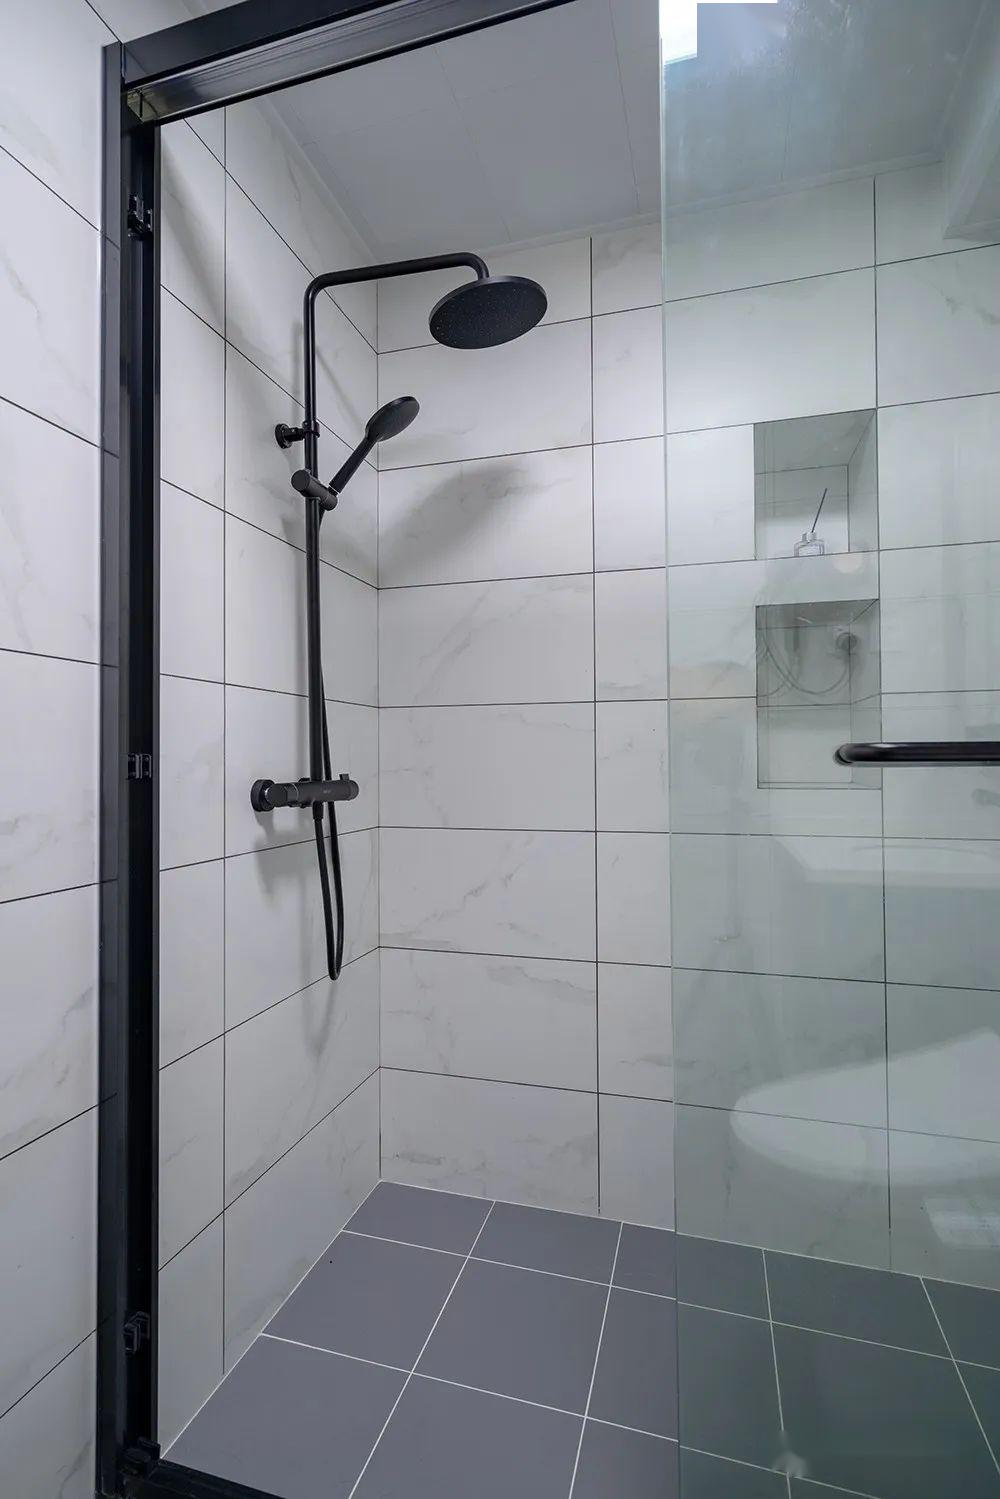 主卫淋浴房的壁龛取代置物架功能,放置沐浴用品.